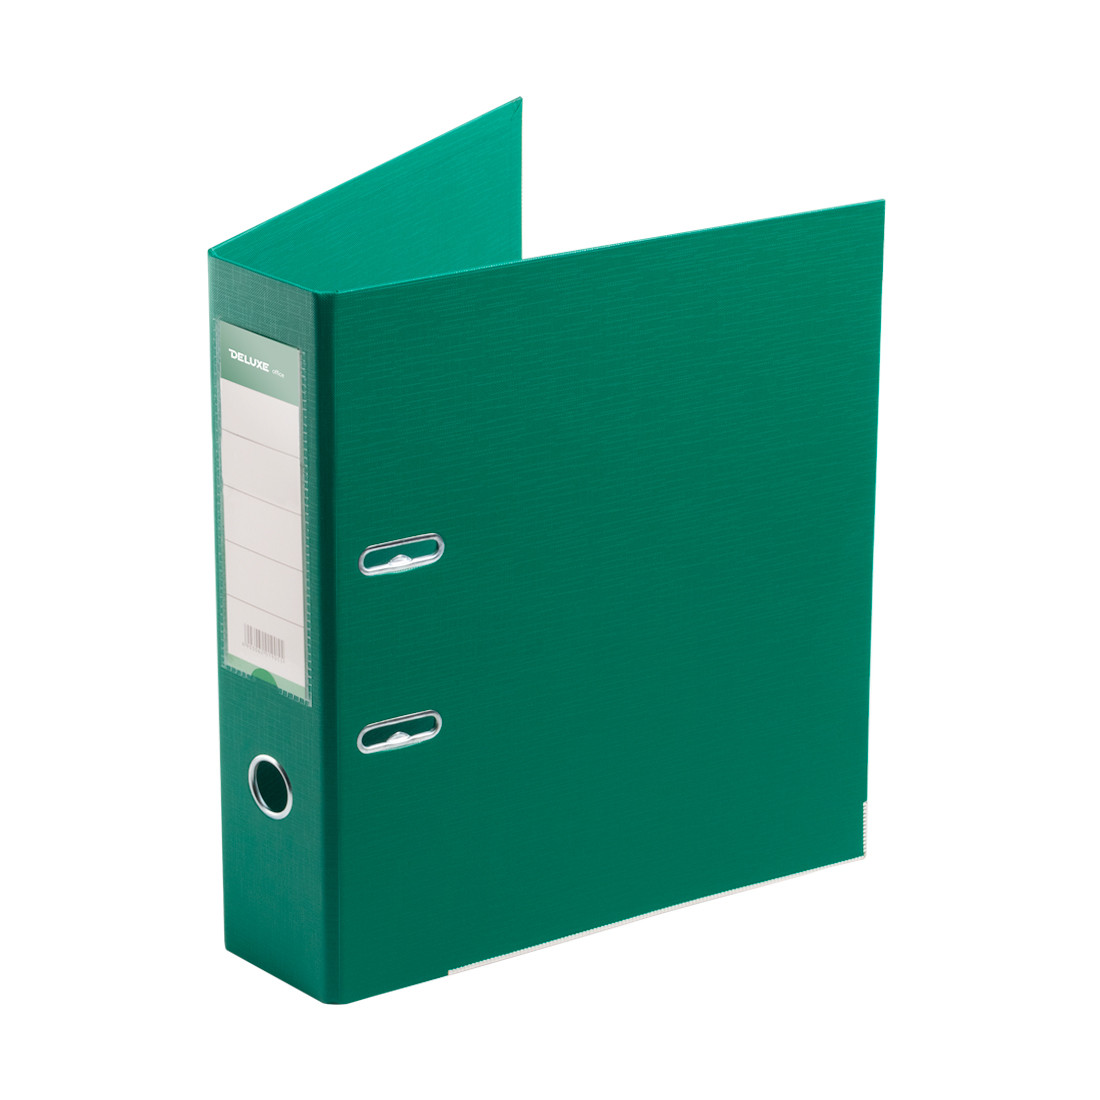 Папка-регистратор Deluxe с арочным механизмом, Office 3-GN36 (3" GREEN), А4, 70 мм, зелёный, фото 1